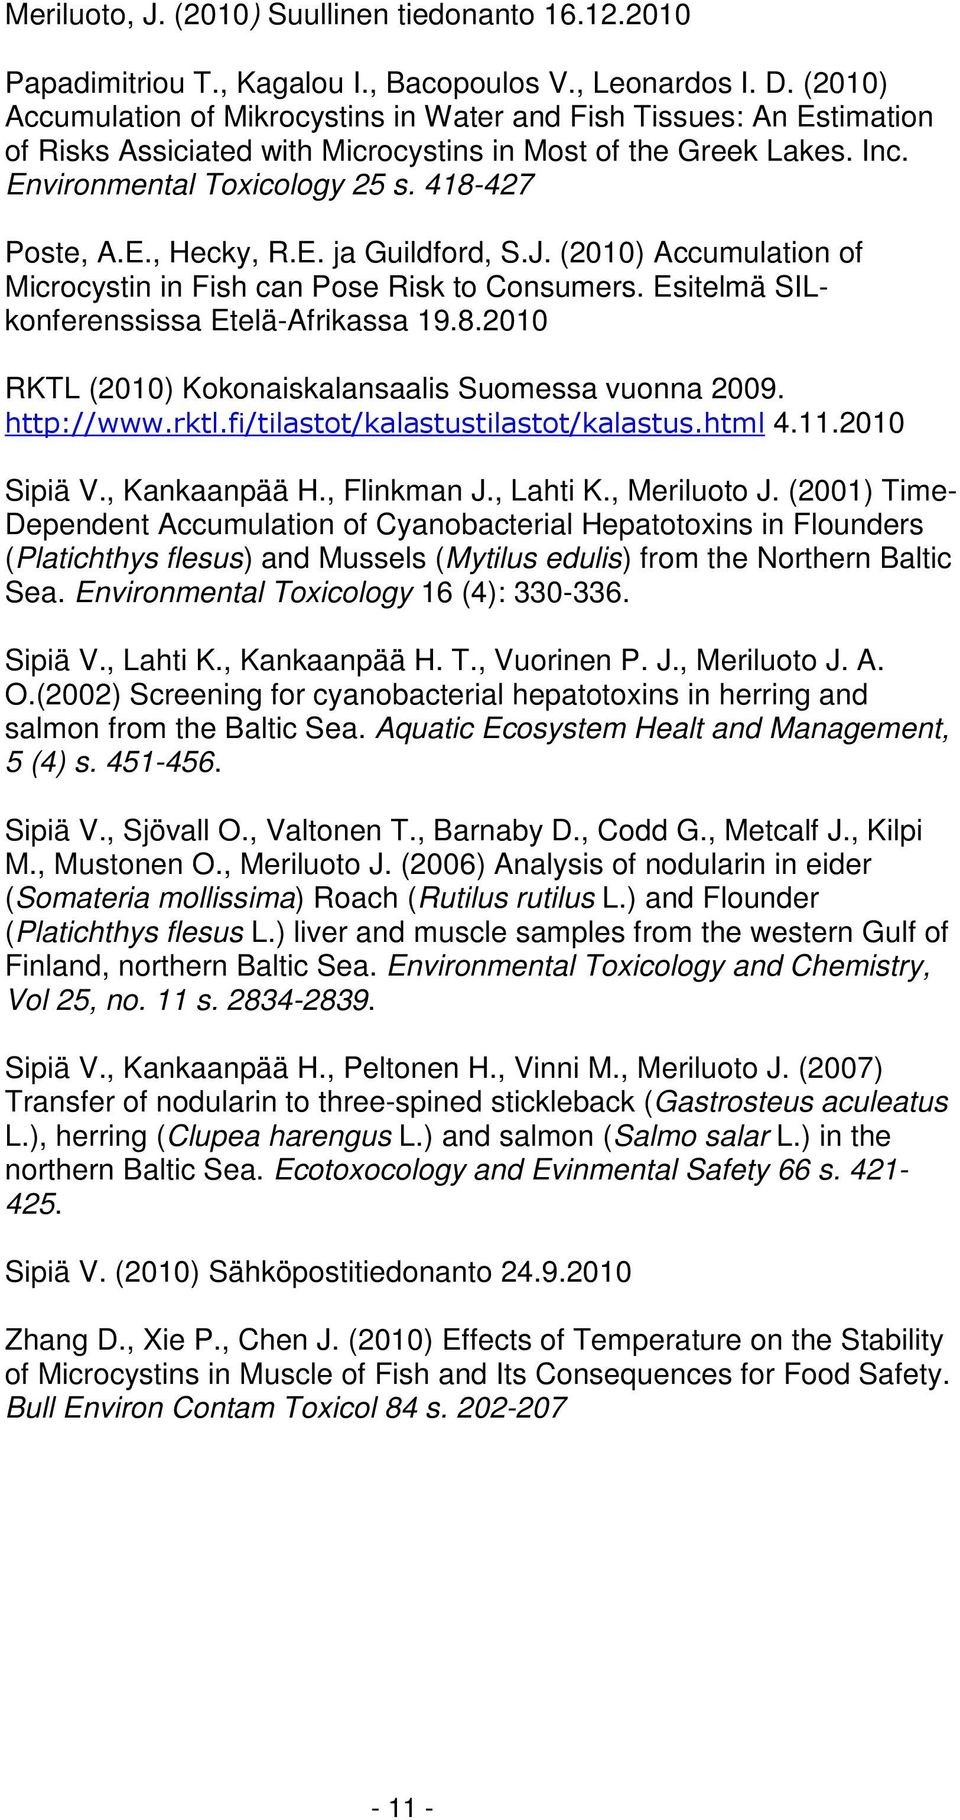 E. ja Guildford, S.J. (2010) Accumulation of Microcystin in Fish can Pose Risk to Consumers. Esitelmä SILkonferenssissa Etelä-Afrikassa 19.8.2010 RKTL (2010) Kokonaiskalansaalis Suomessa vuonna 2009.